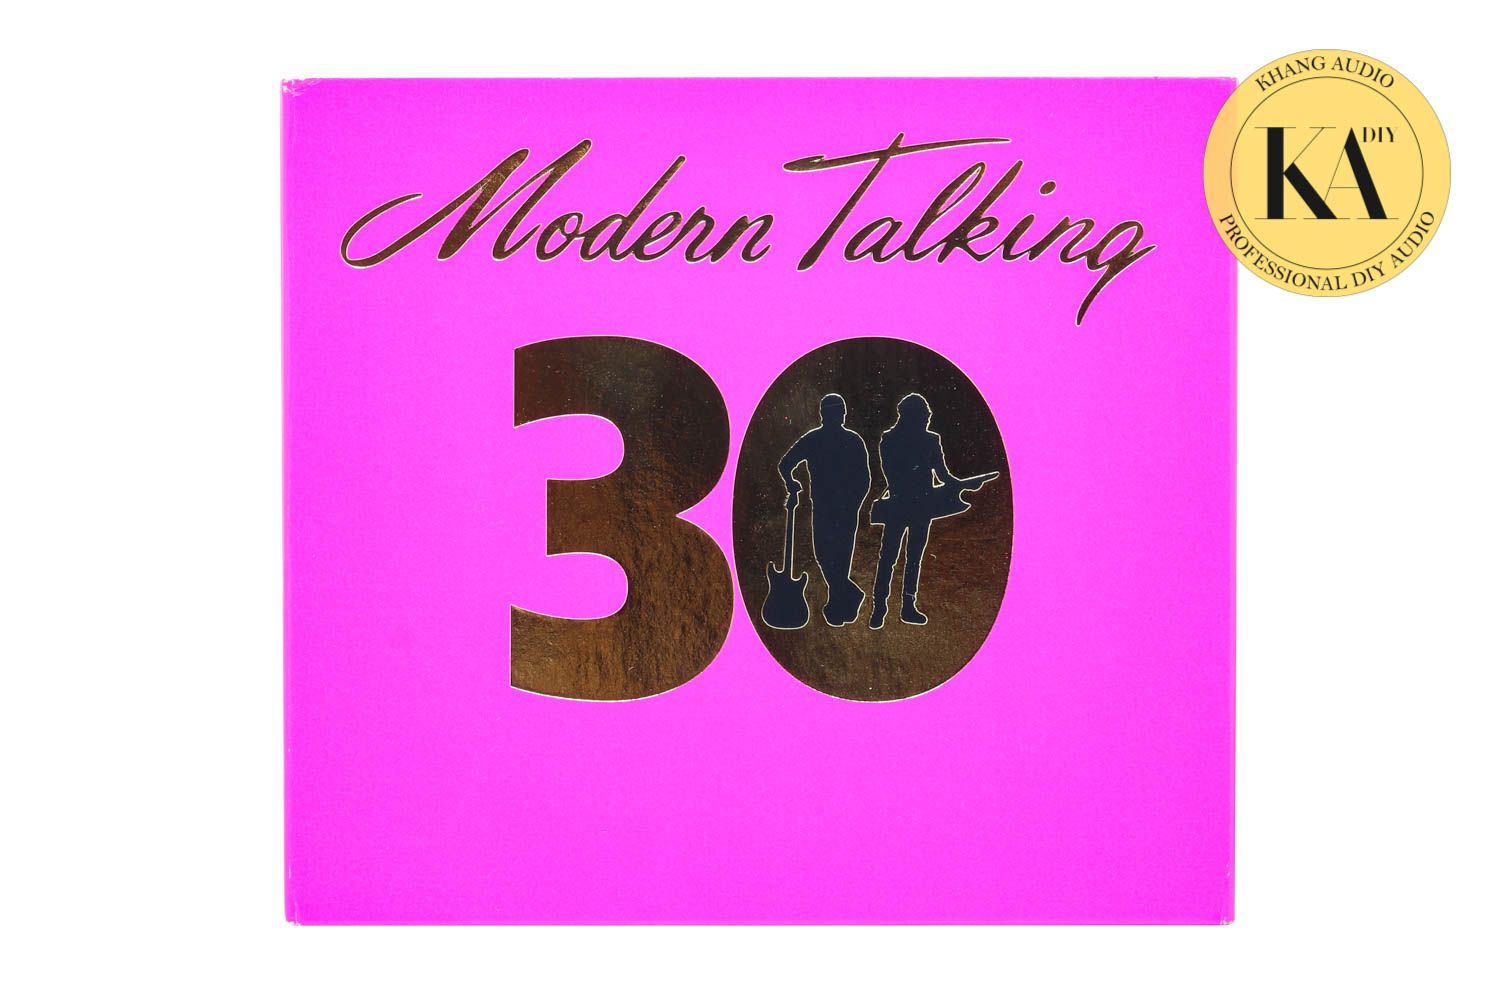 Modern Talking - 30 Khang Audio 0336380099